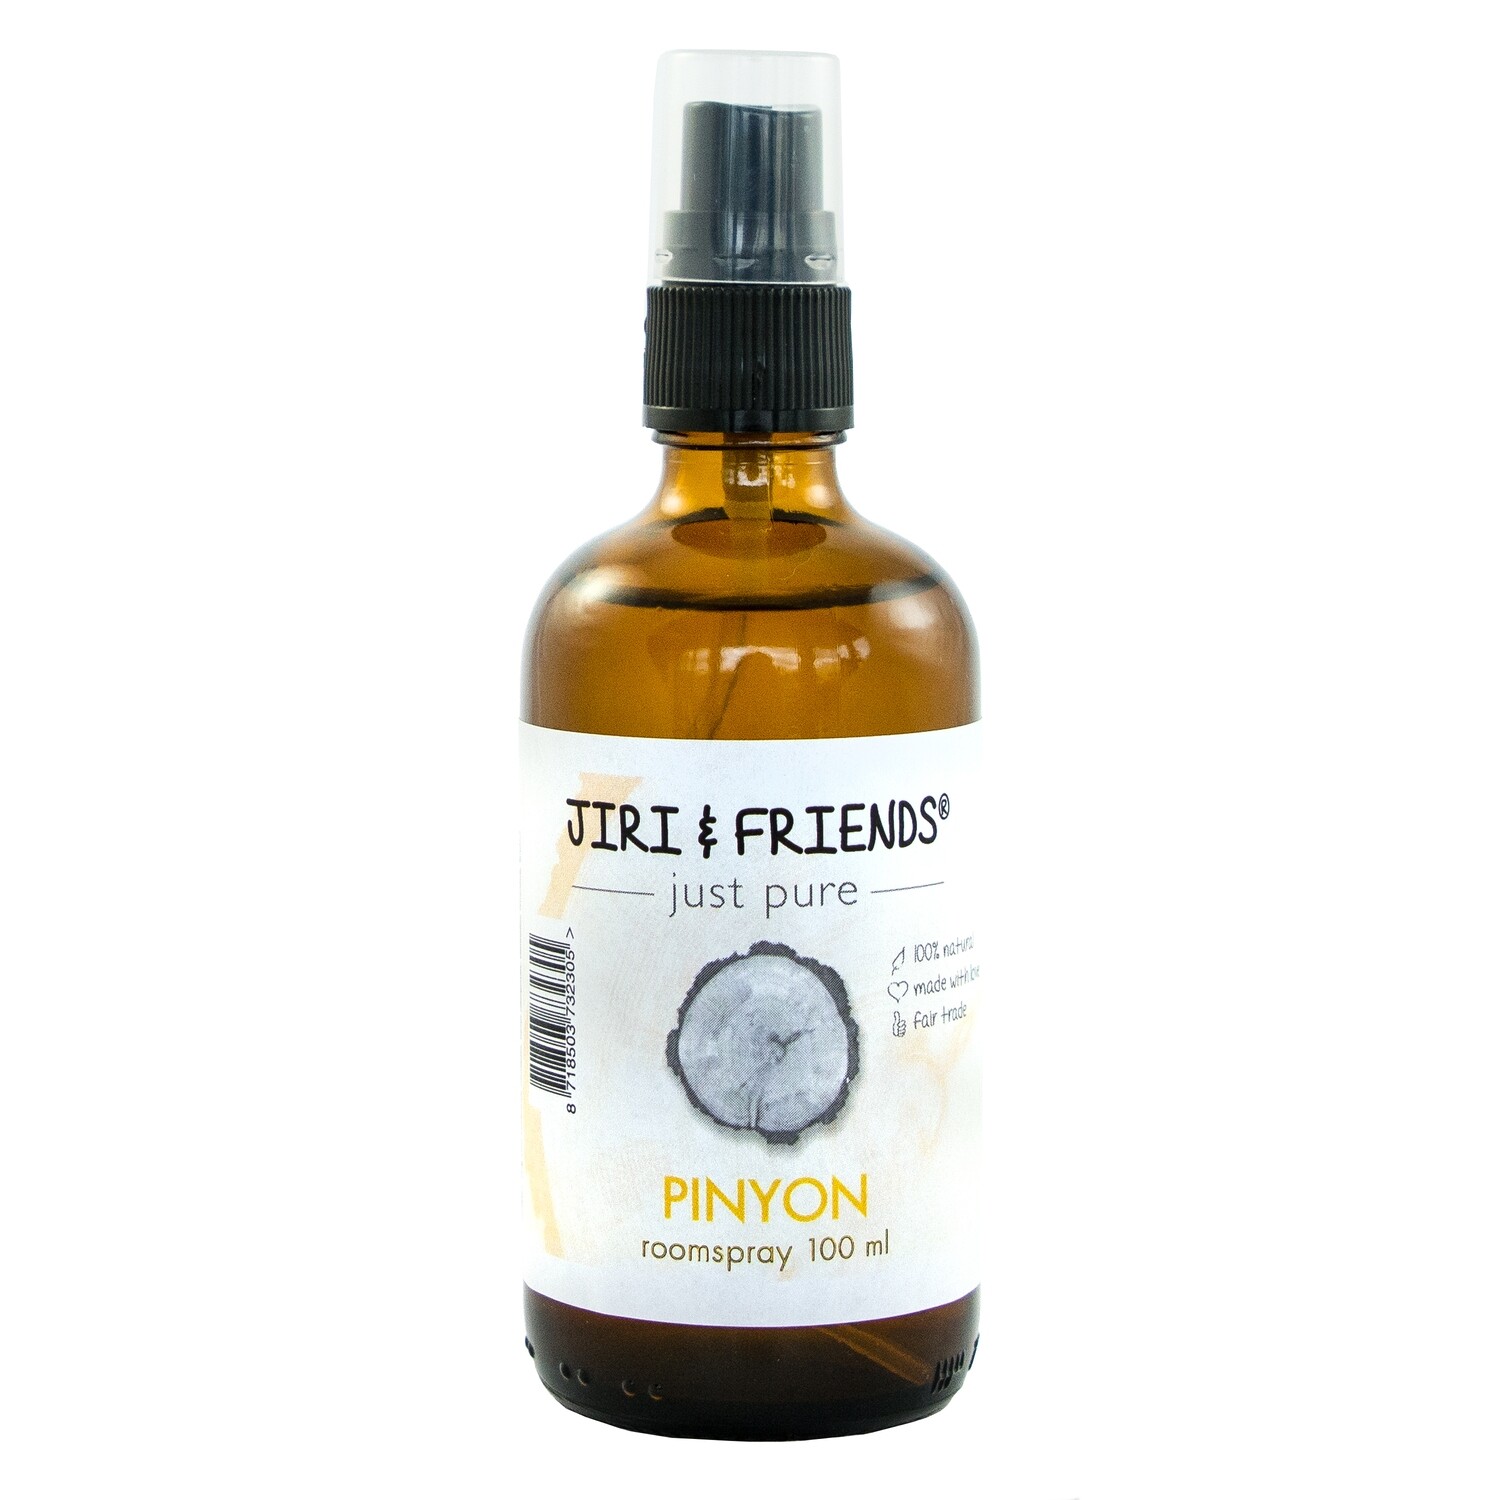 Pinyon Aromatherapy spray 100ml